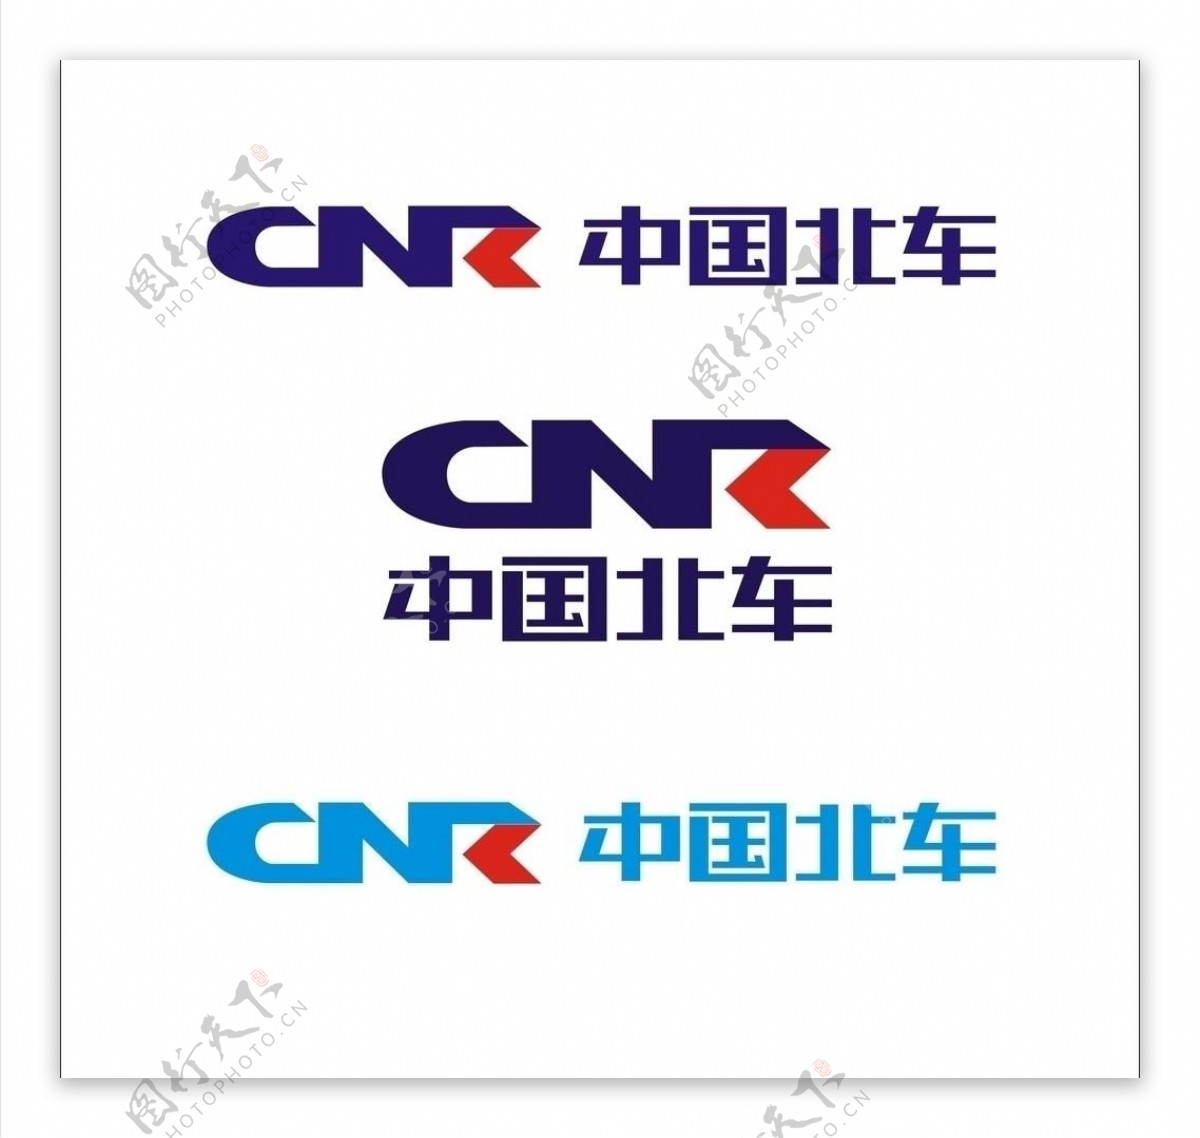 中国北车logo图片